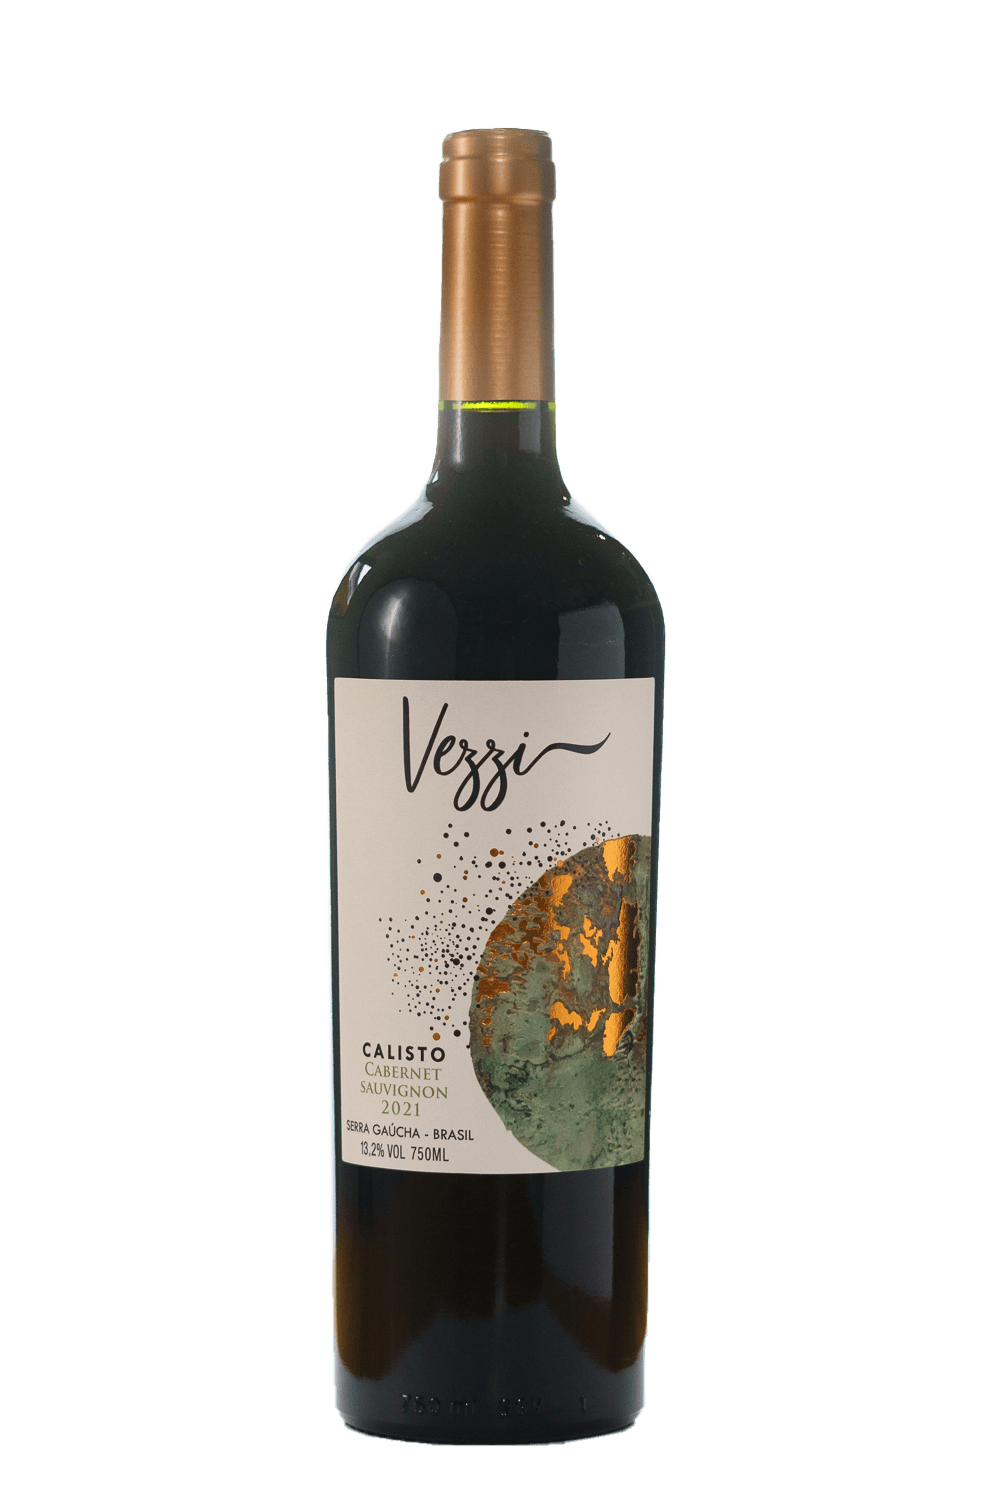 Vezzi Boschi Calisto Cabernet Sauvignon 2021 - The Blend Wines